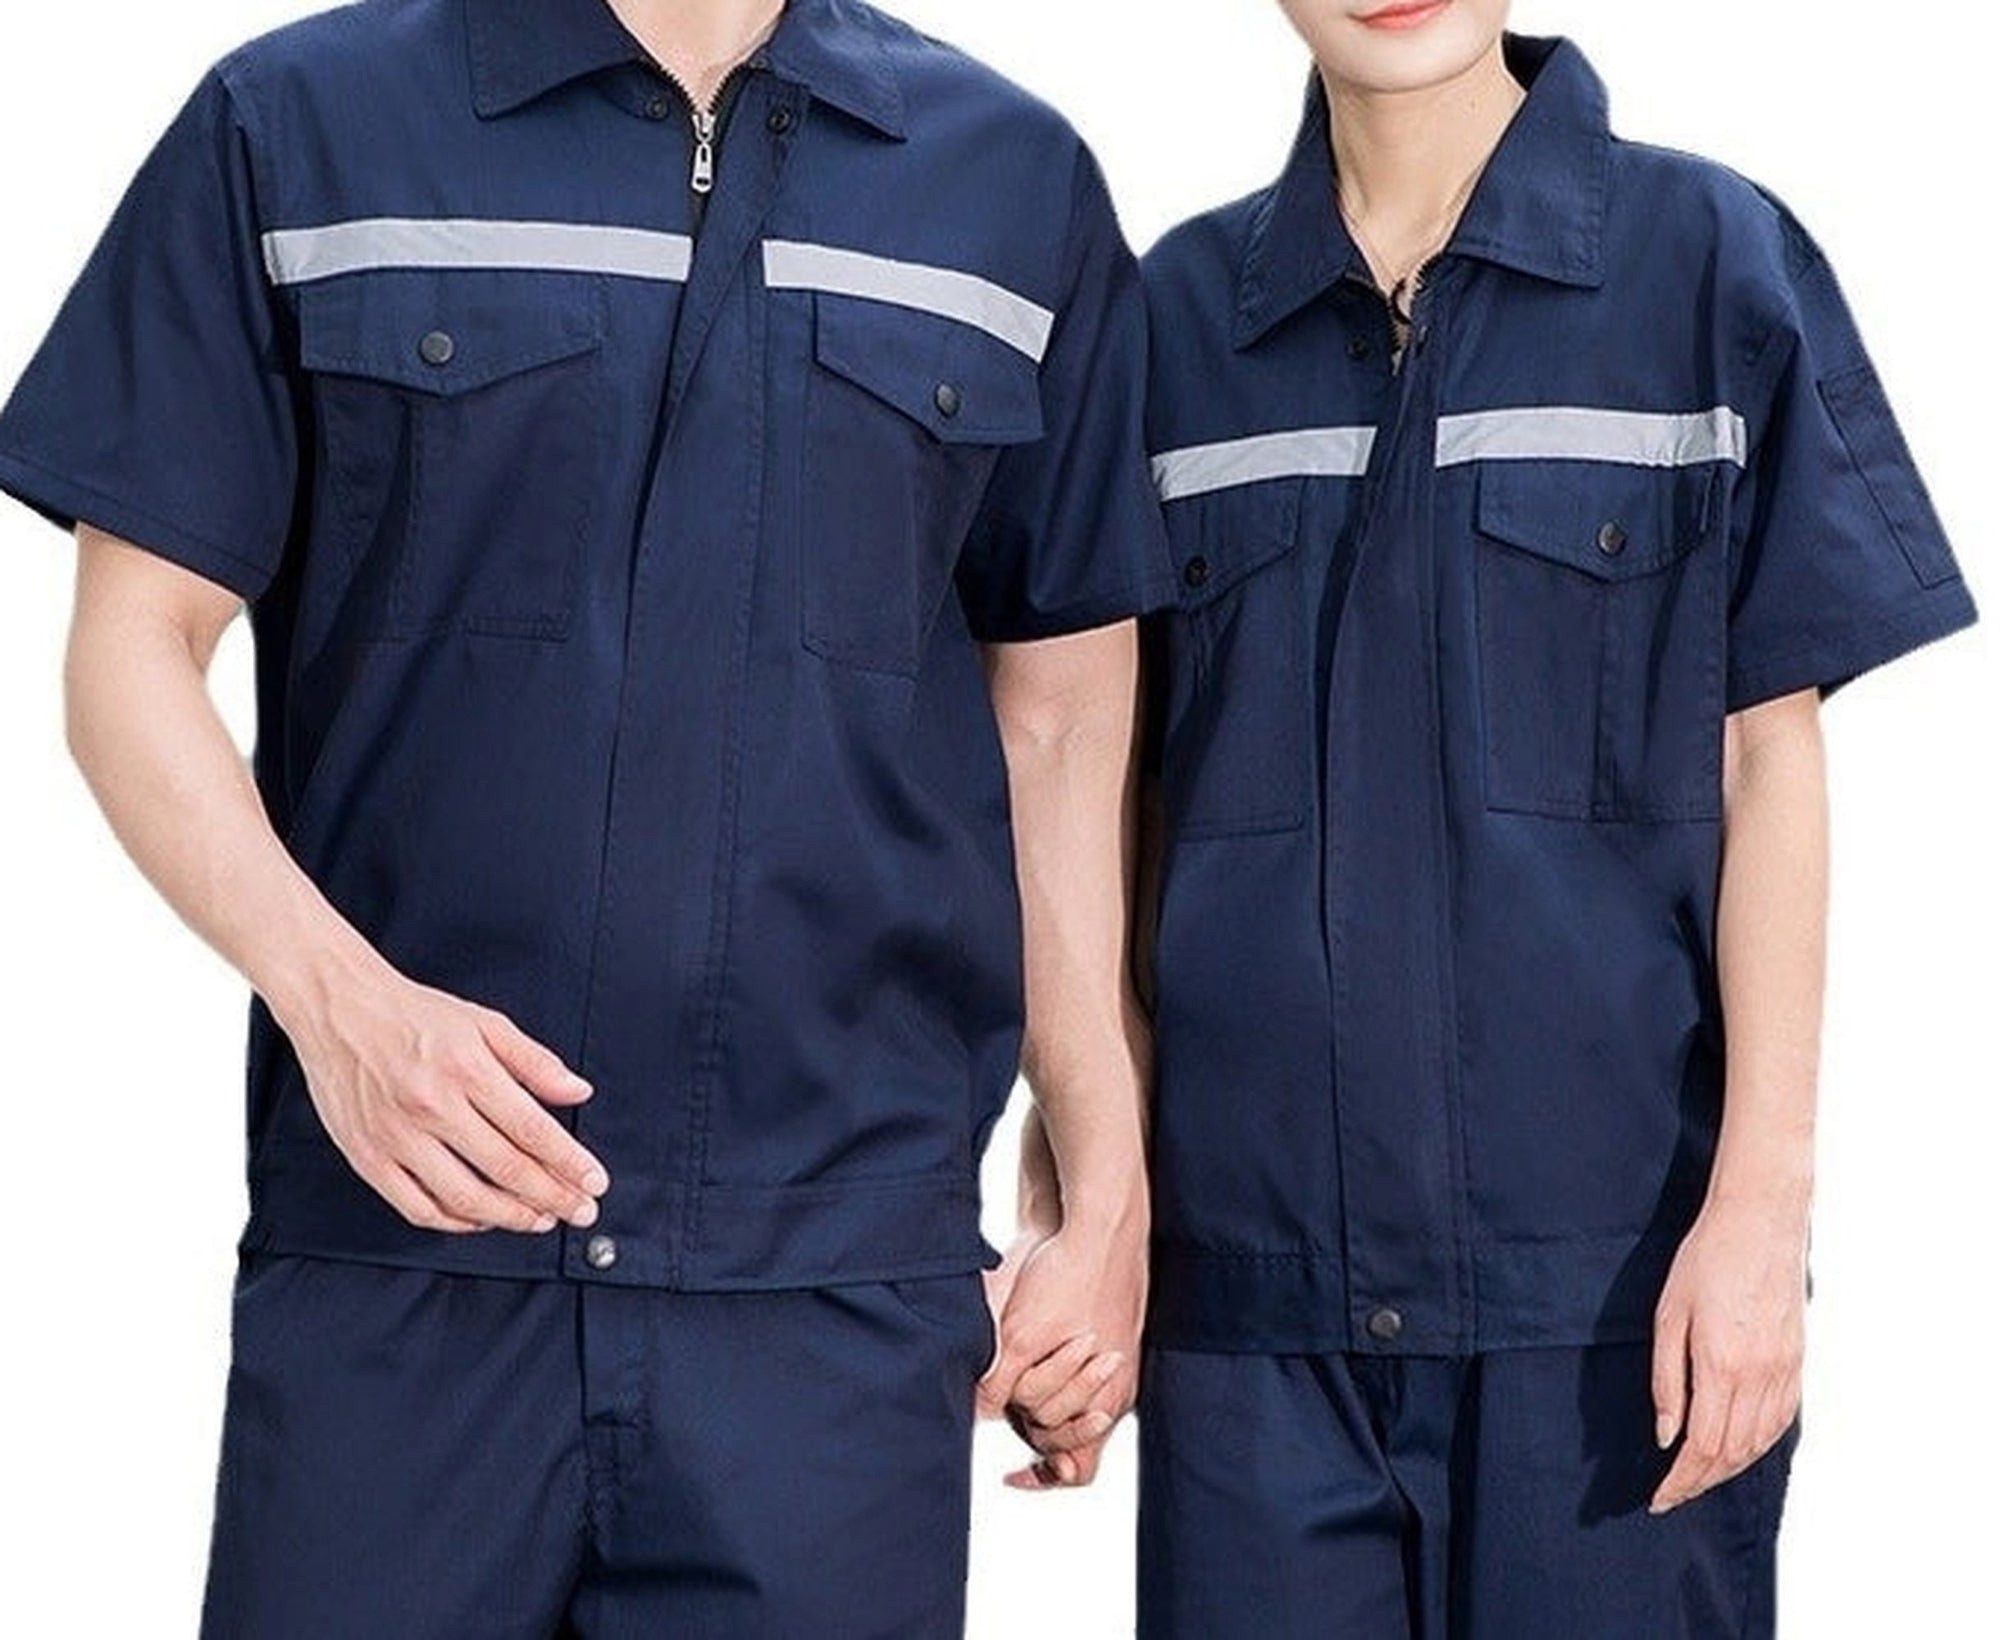 AUKUU Arbeitsoverall Ein Satz sommerlicher, reflektierender, gestreifter Arbeitskleidung, geeignet für Werkstätten, Arbeitsschutz und Autowerkstätten